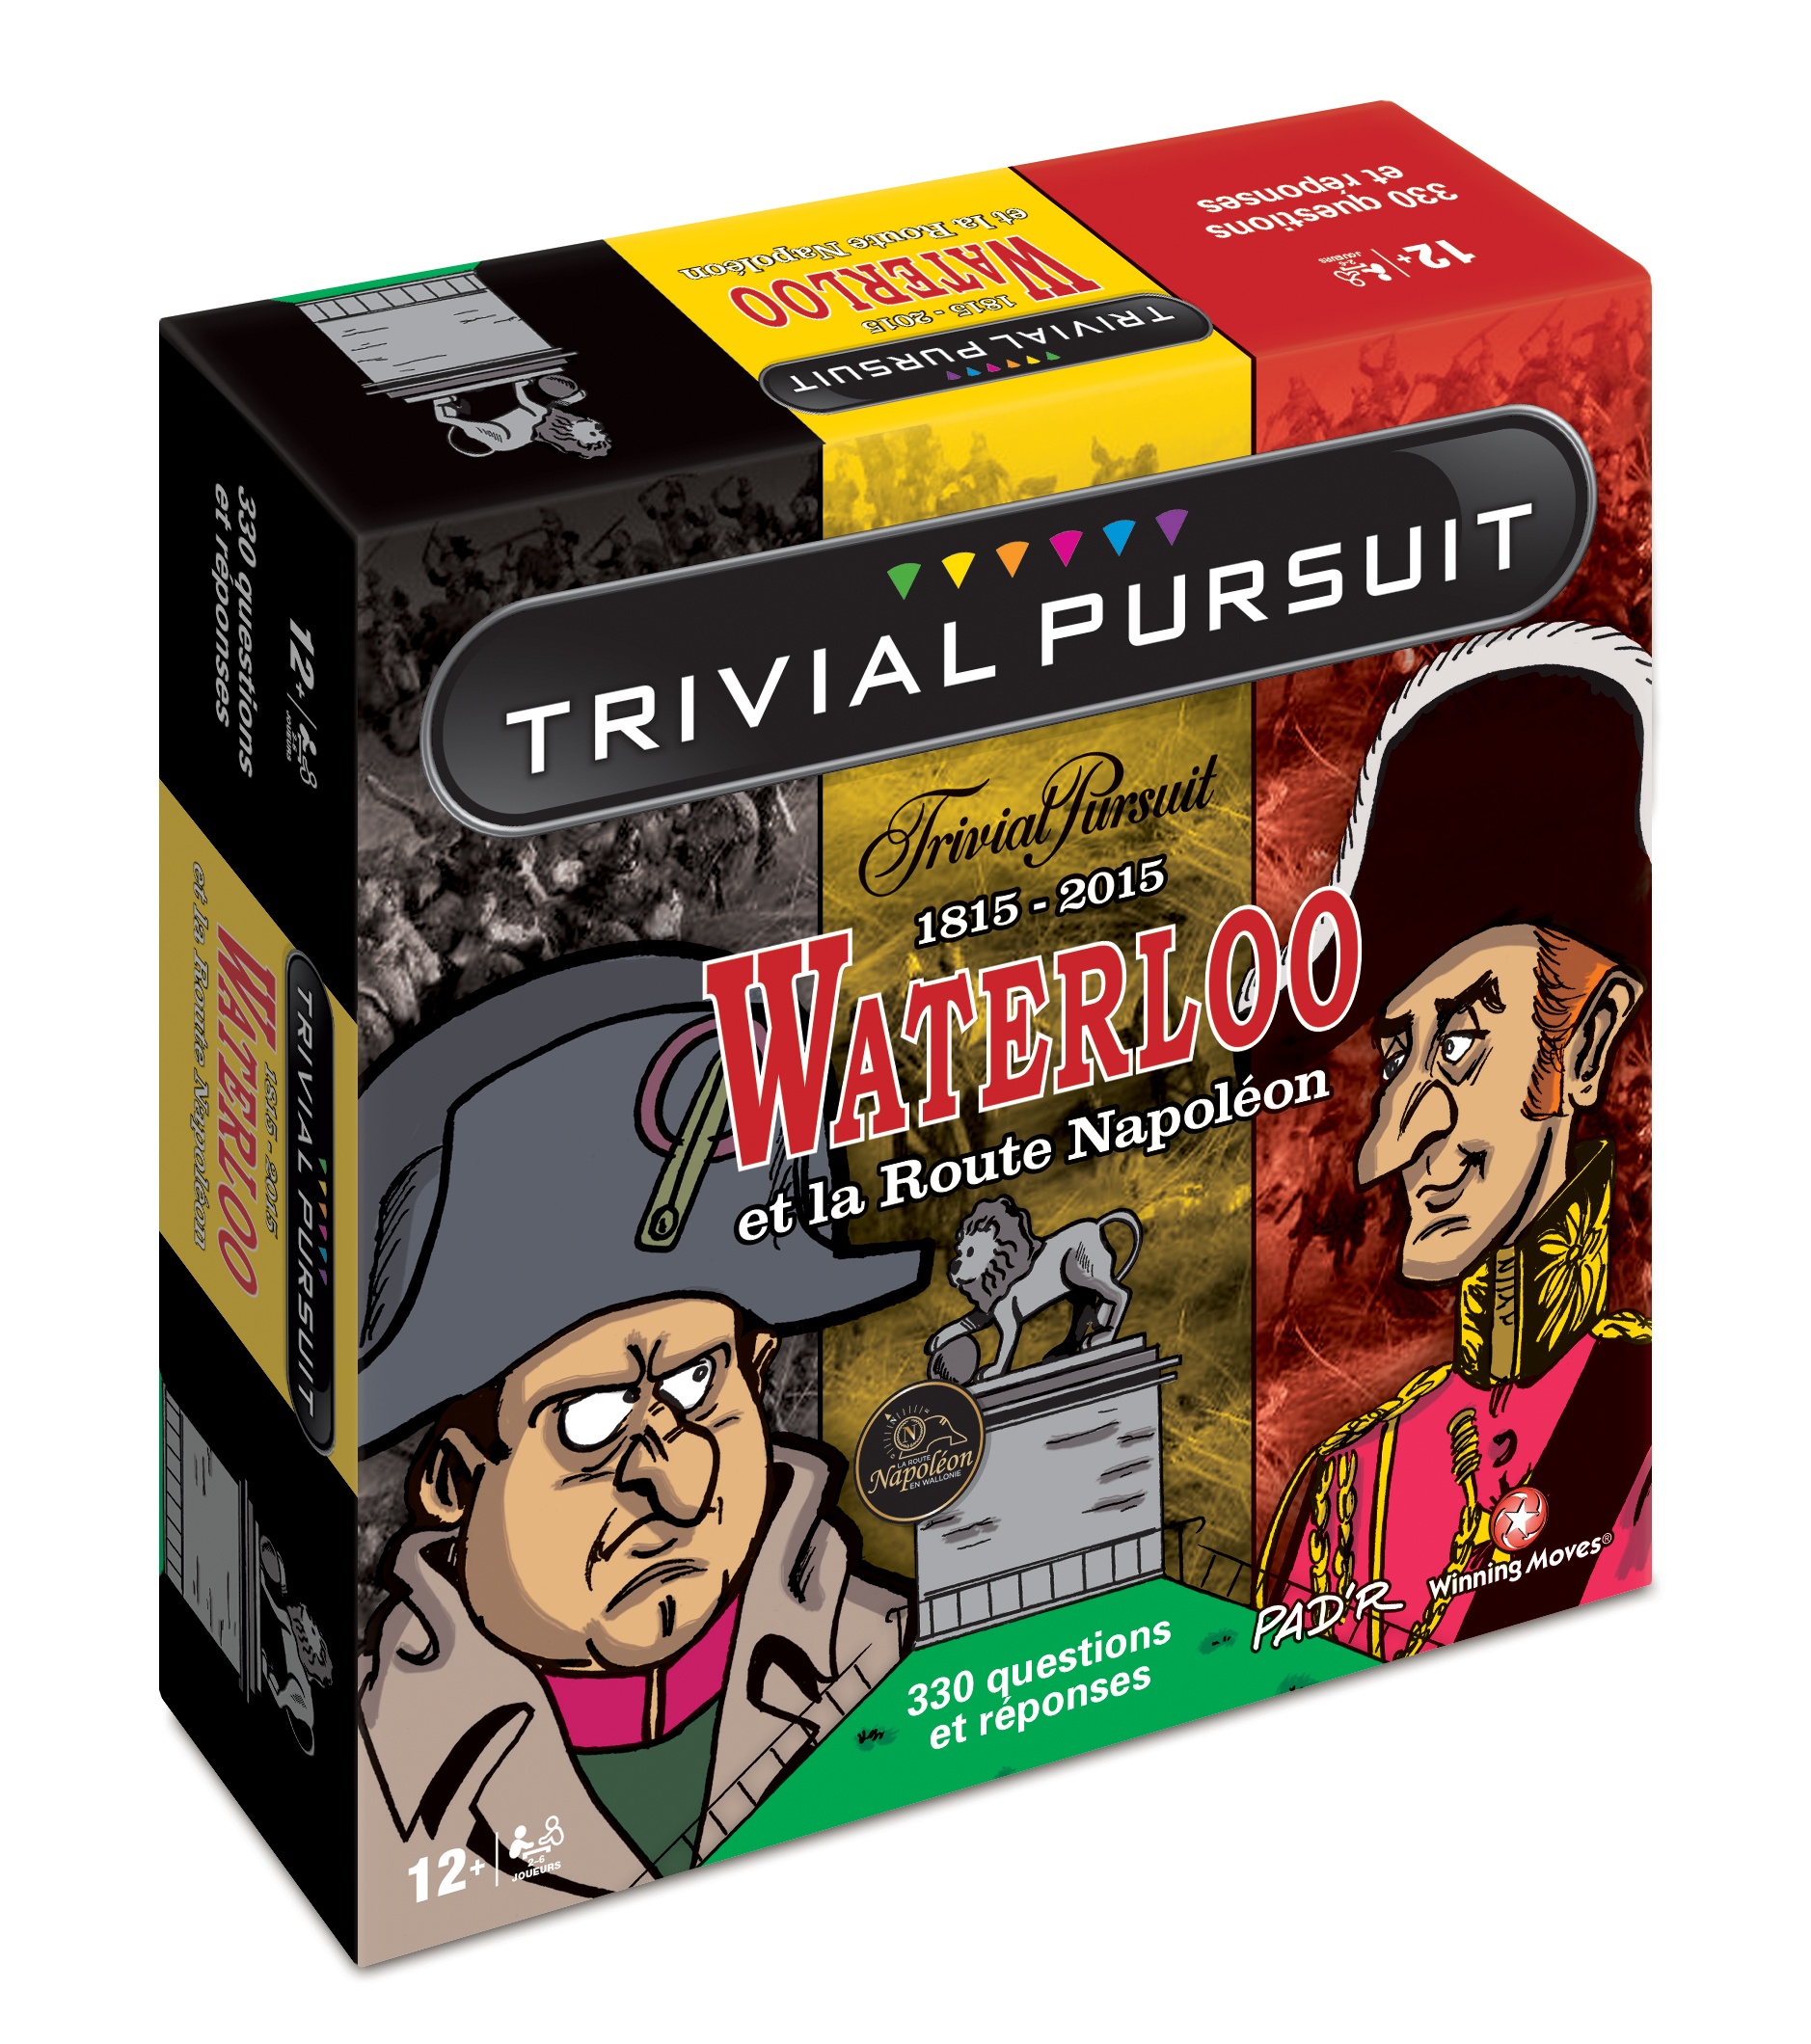 Le Trivial Pursuit Waterloo et la Route Napoléon